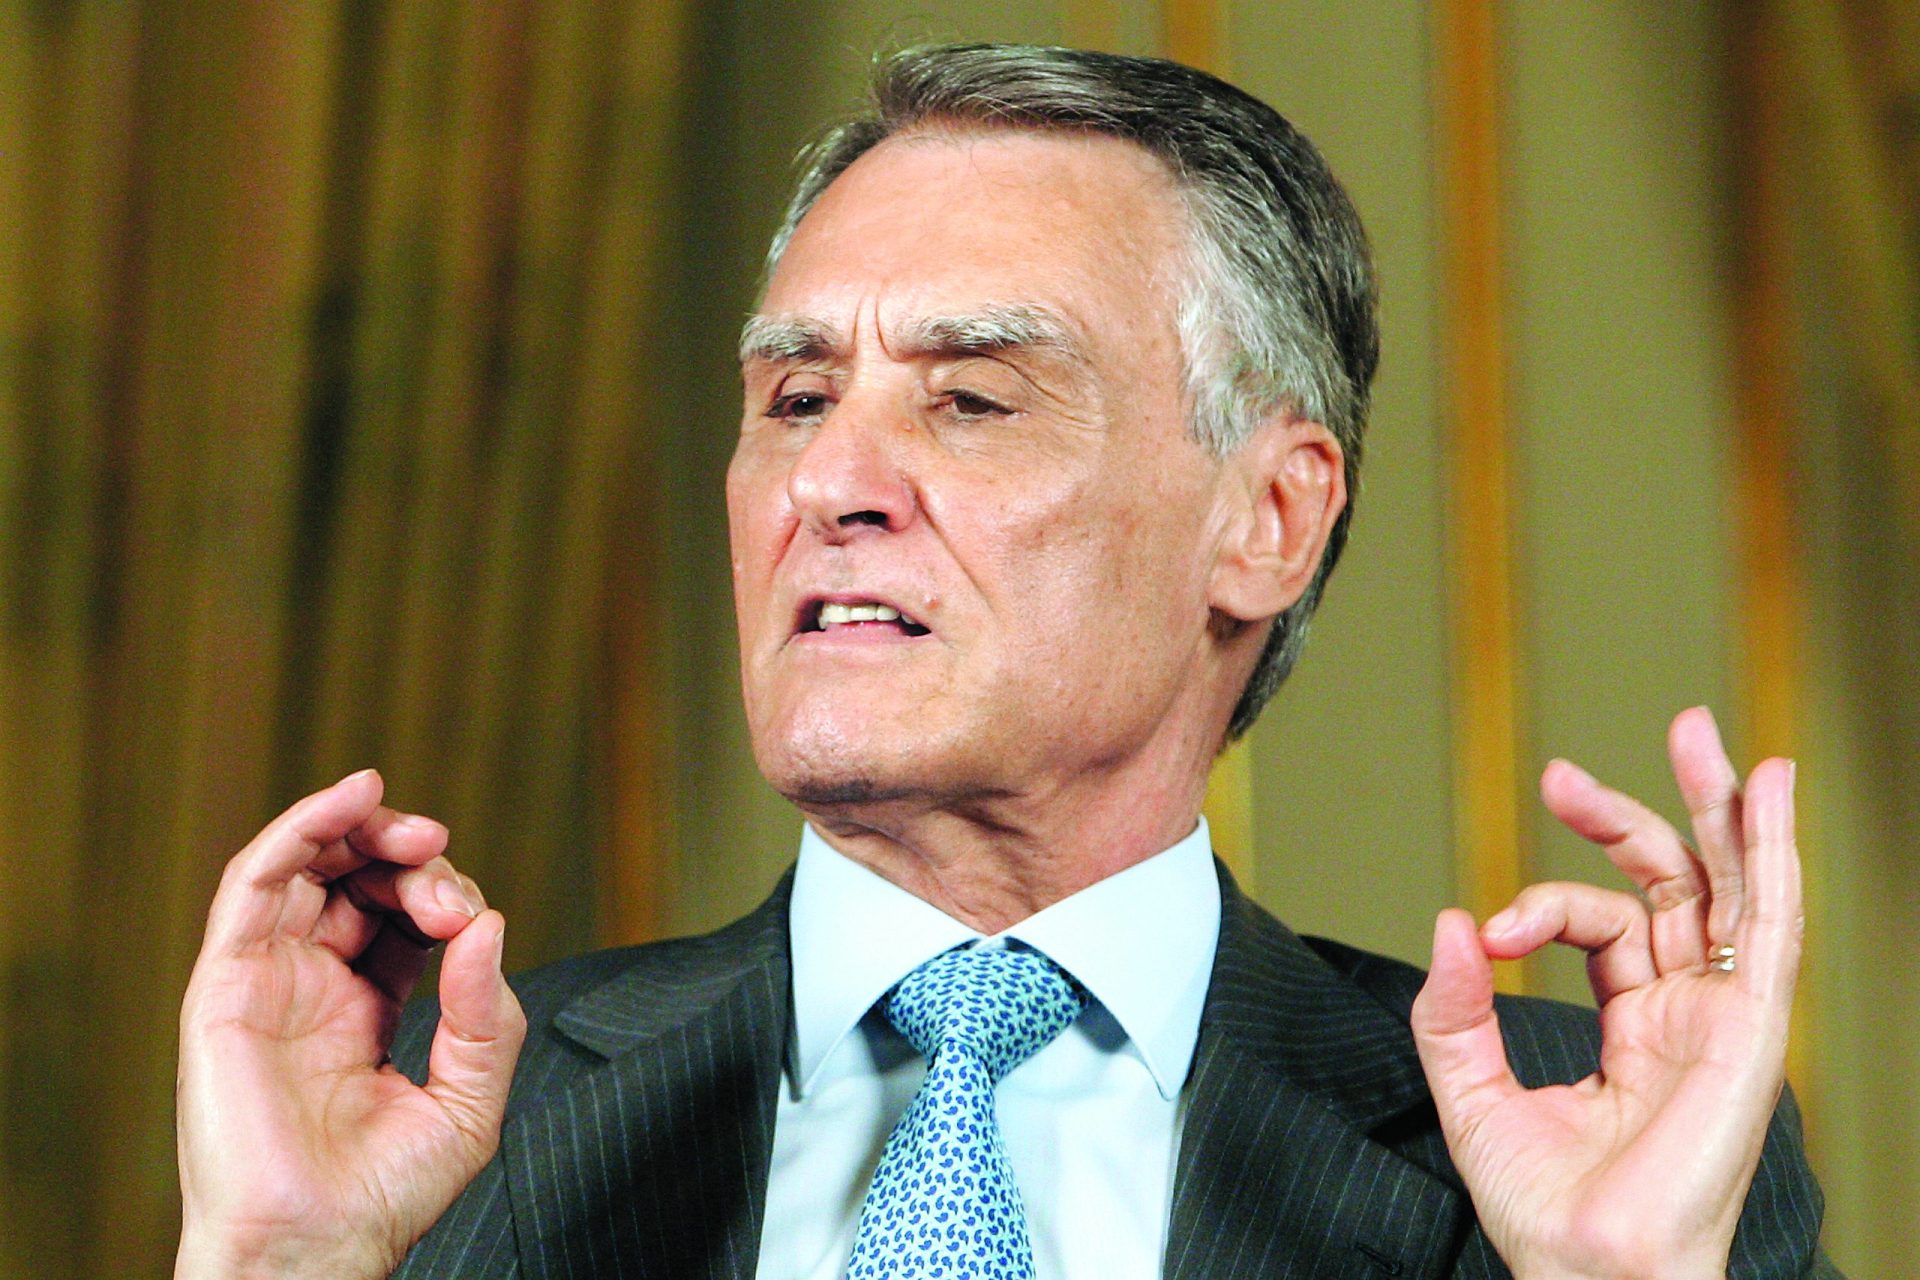 O choque de realidade de Cavaco Silva contra a “revolução socialista”